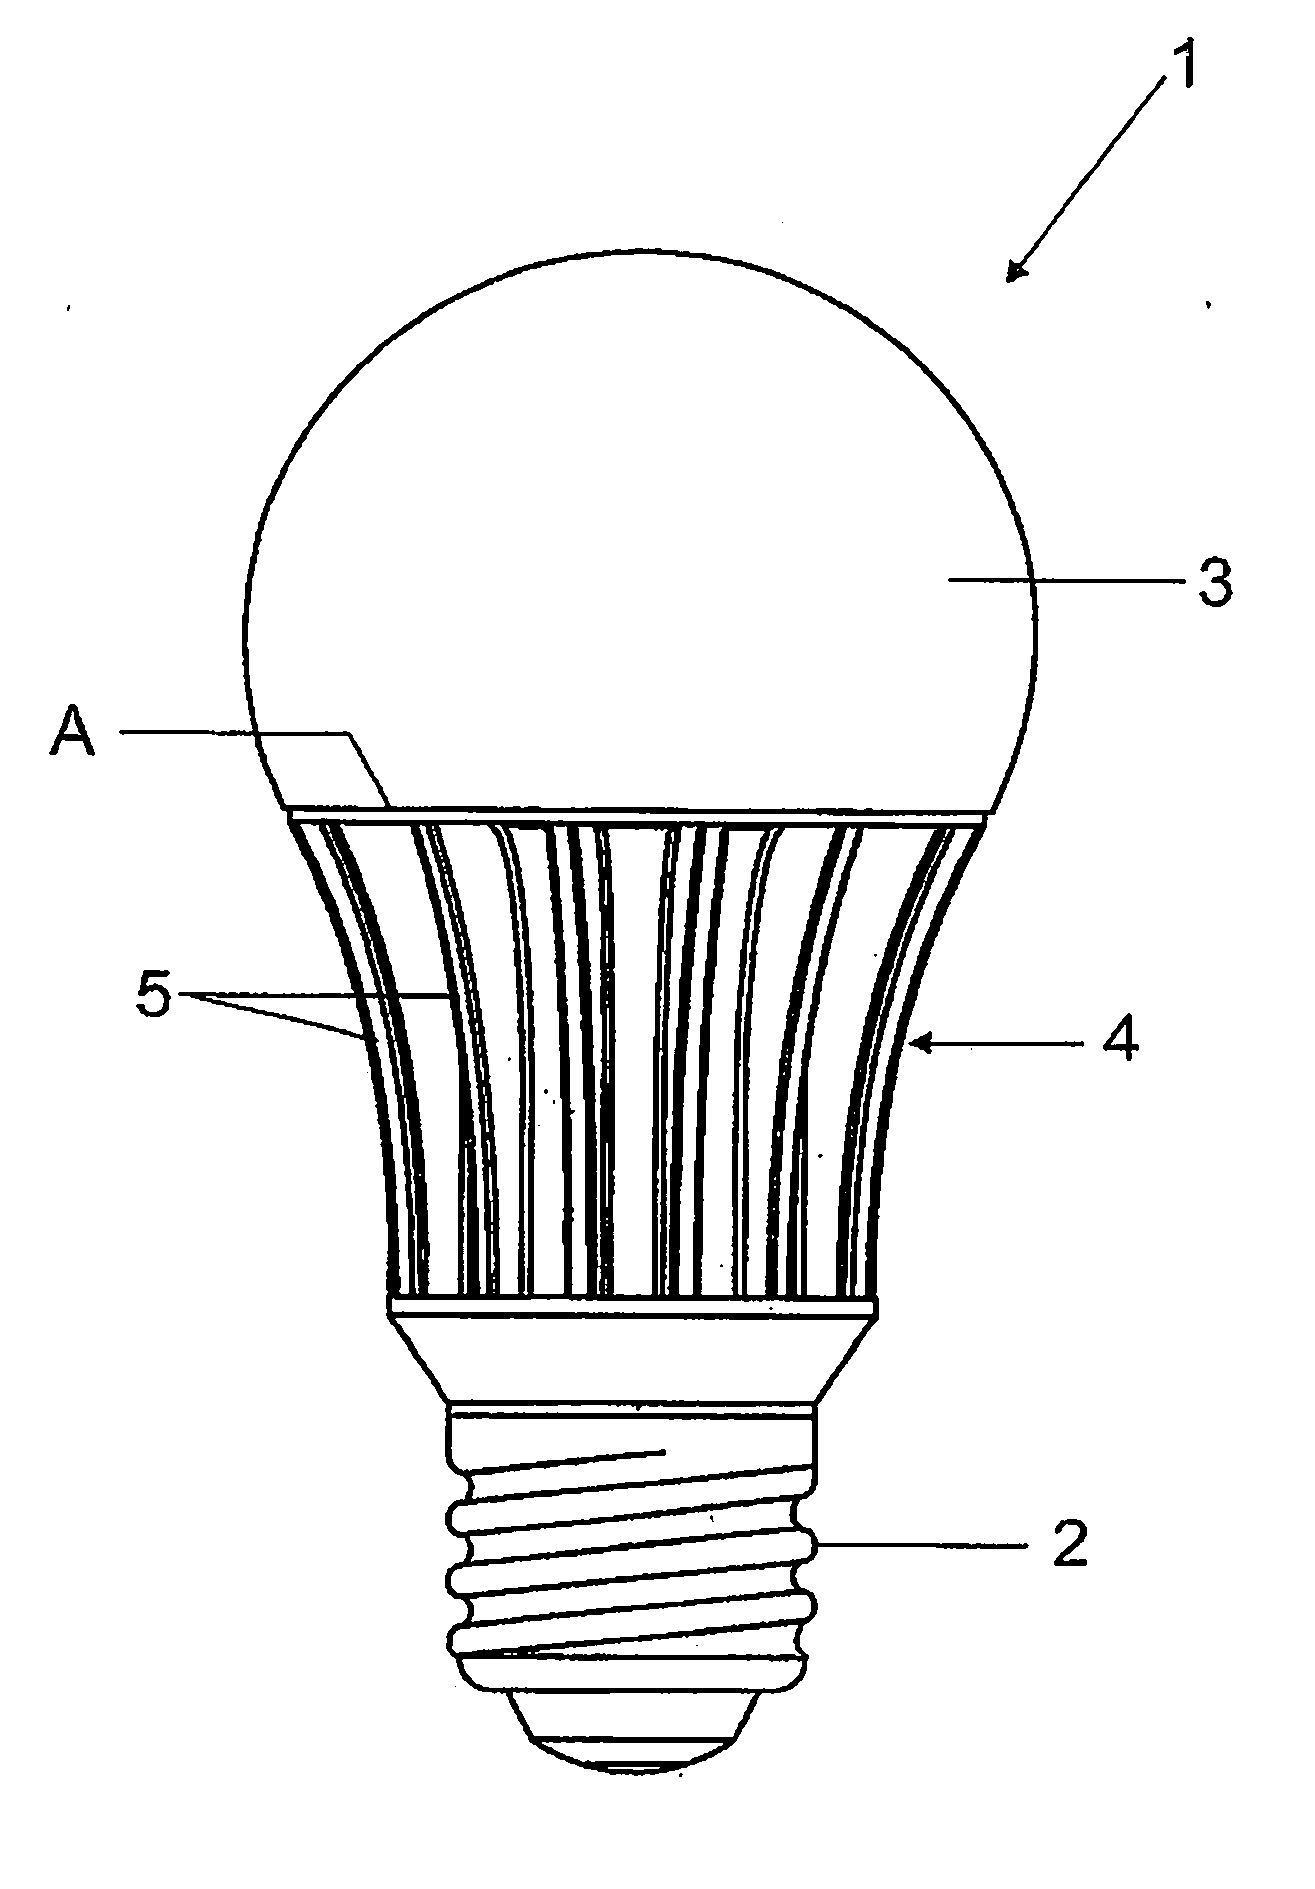 Illumination apparatus with heat sink